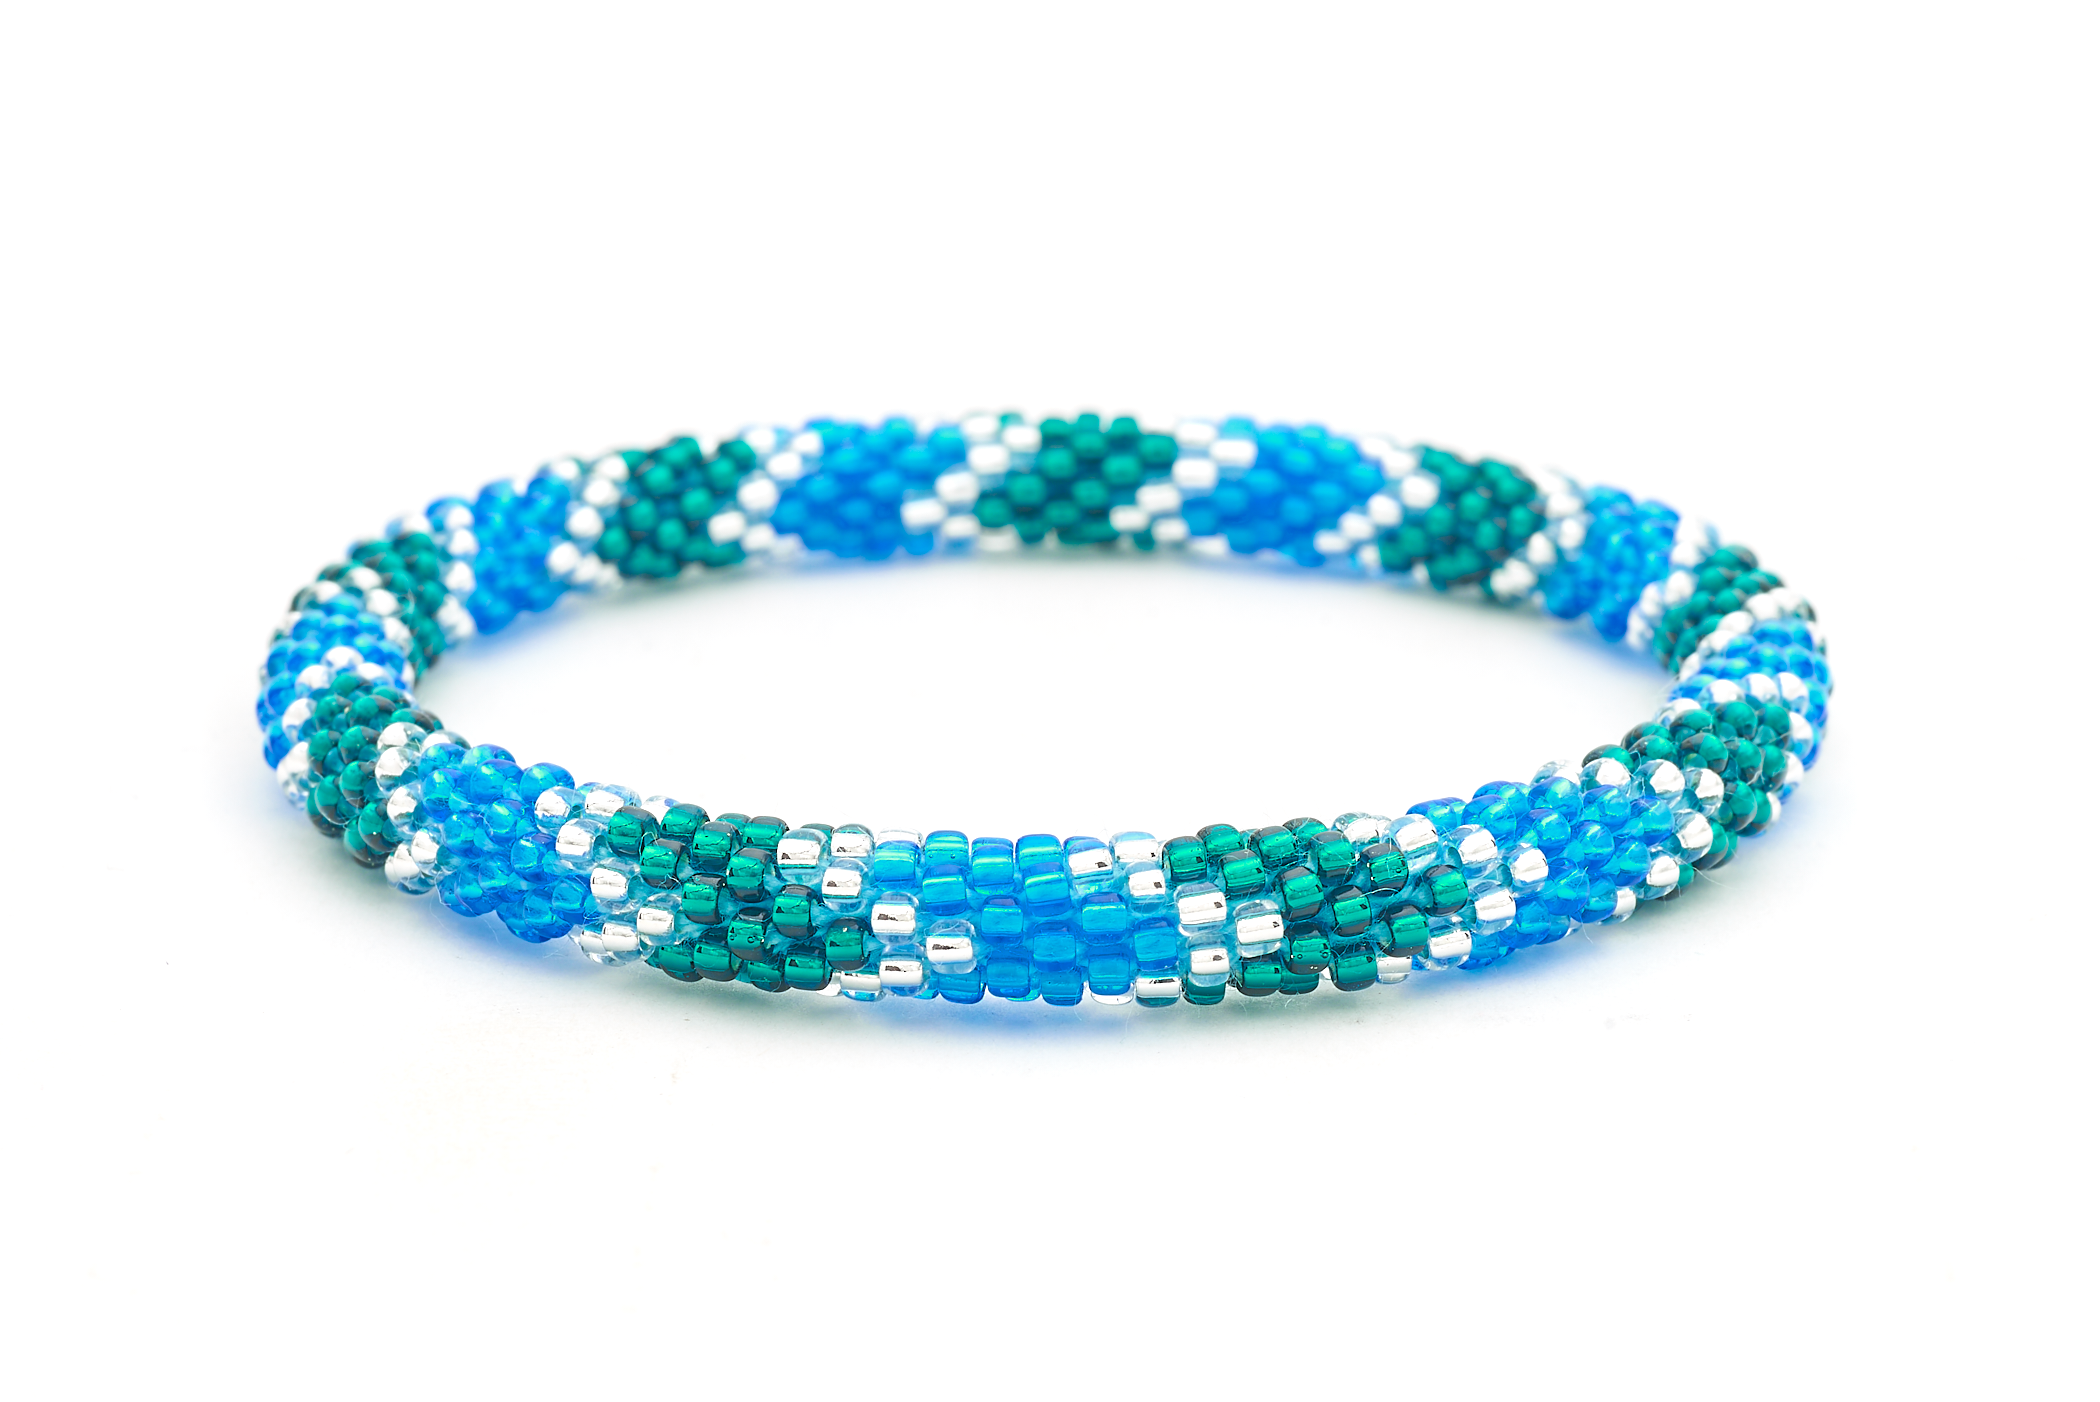 Sashka Co. Extended 8" Bracelet Blue / Teal / Clear Serenity Seas Bracelet - Extended 8"